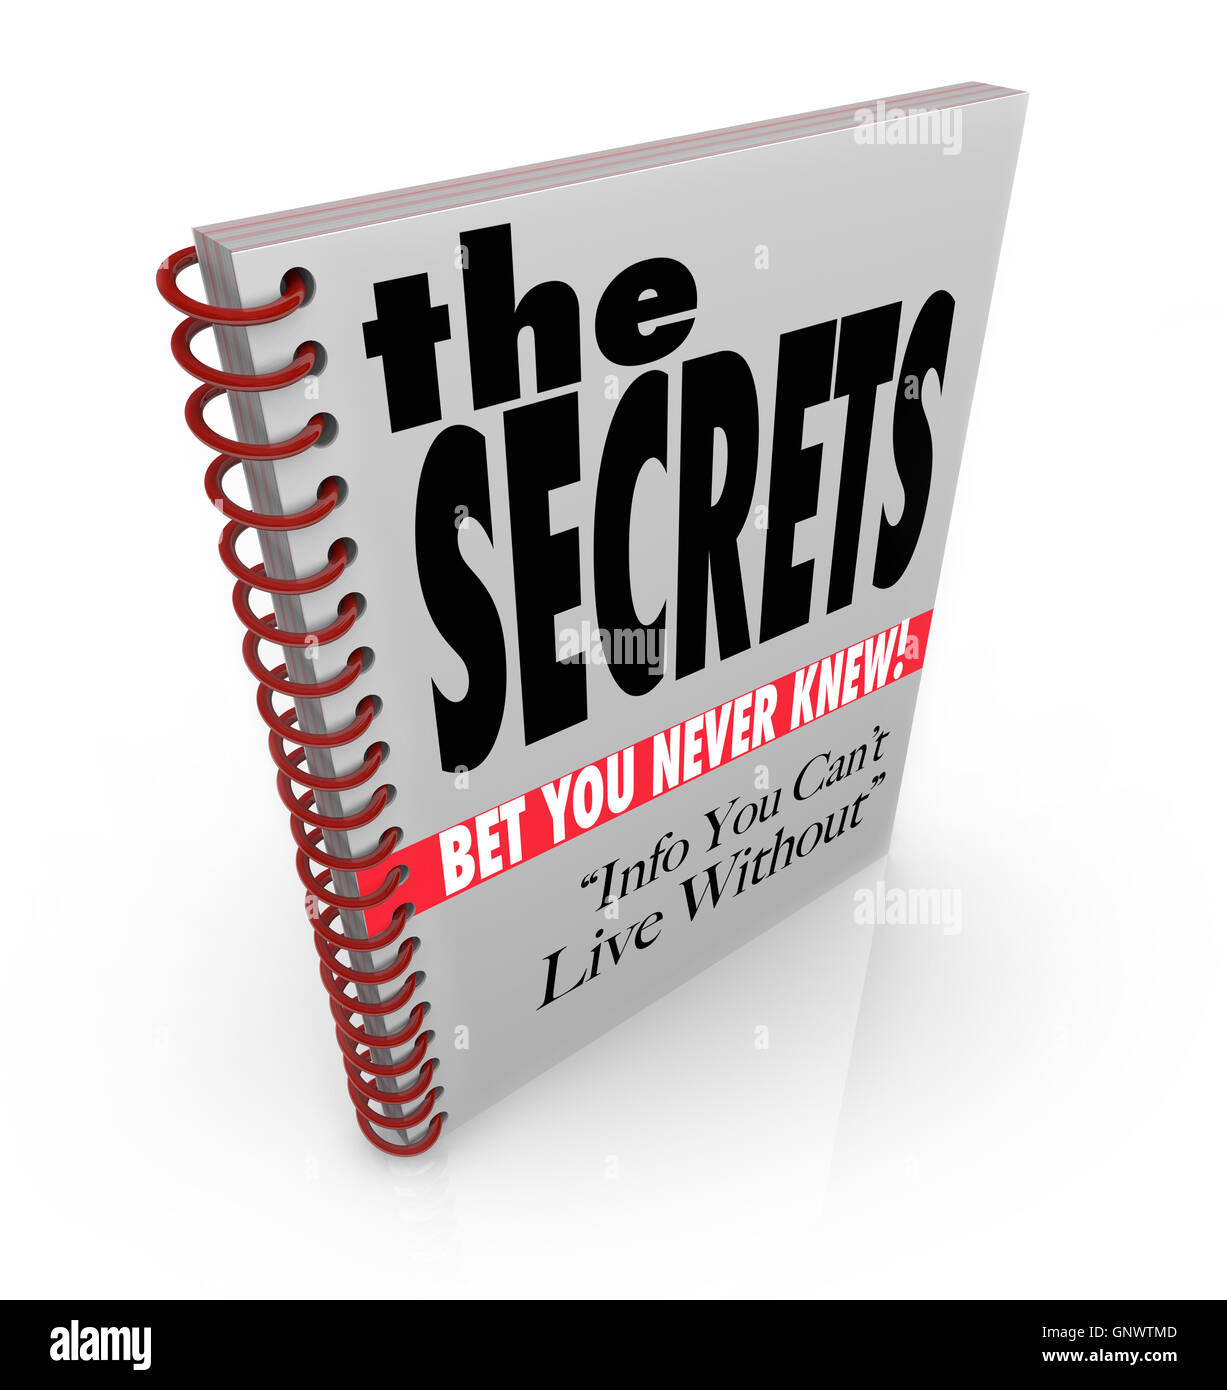 Les Secrets de livre a révélé l'information et la connaissance Banque D'Images